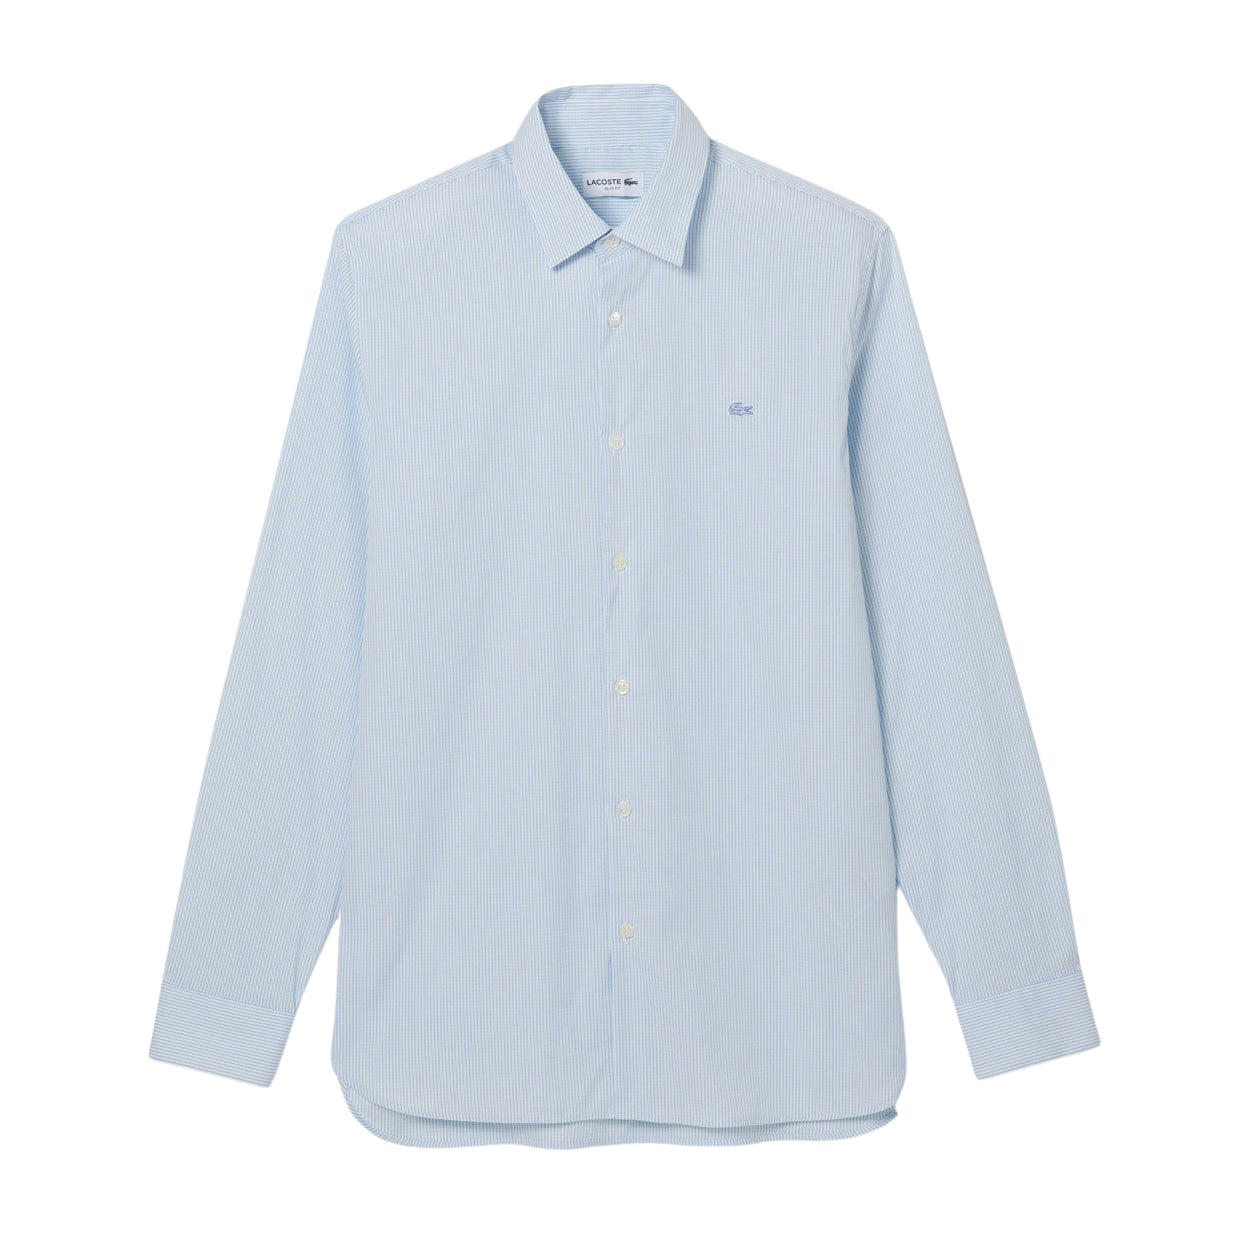 Camicia Uomo Lacoste A Quadri Bianco / Blu / Azzurro su Brubaker Store